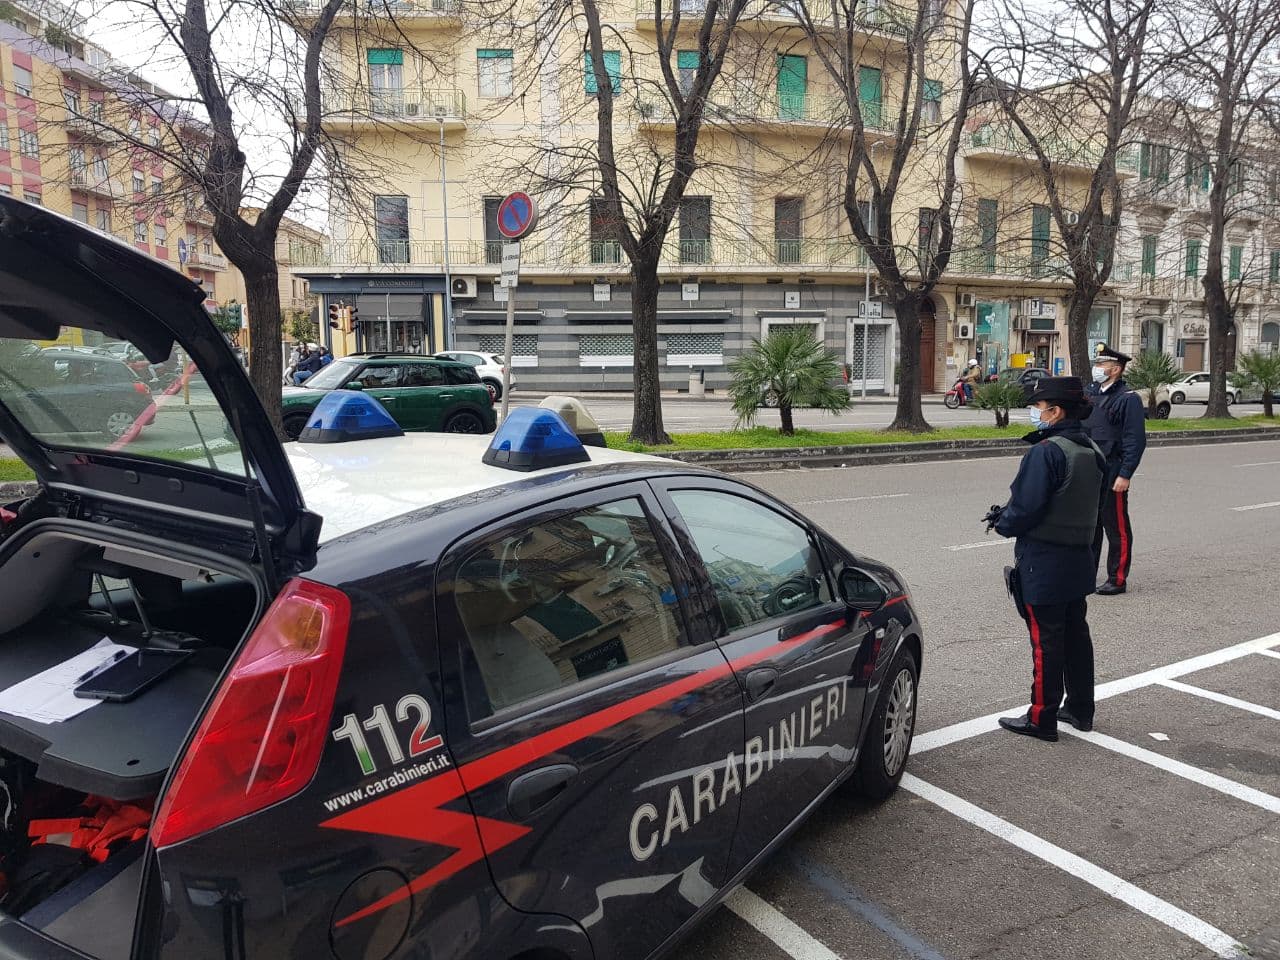 Tentativo di furto in una villa, due pregiudicati vengono sorpresi dai carabinieri: manette ai polsi